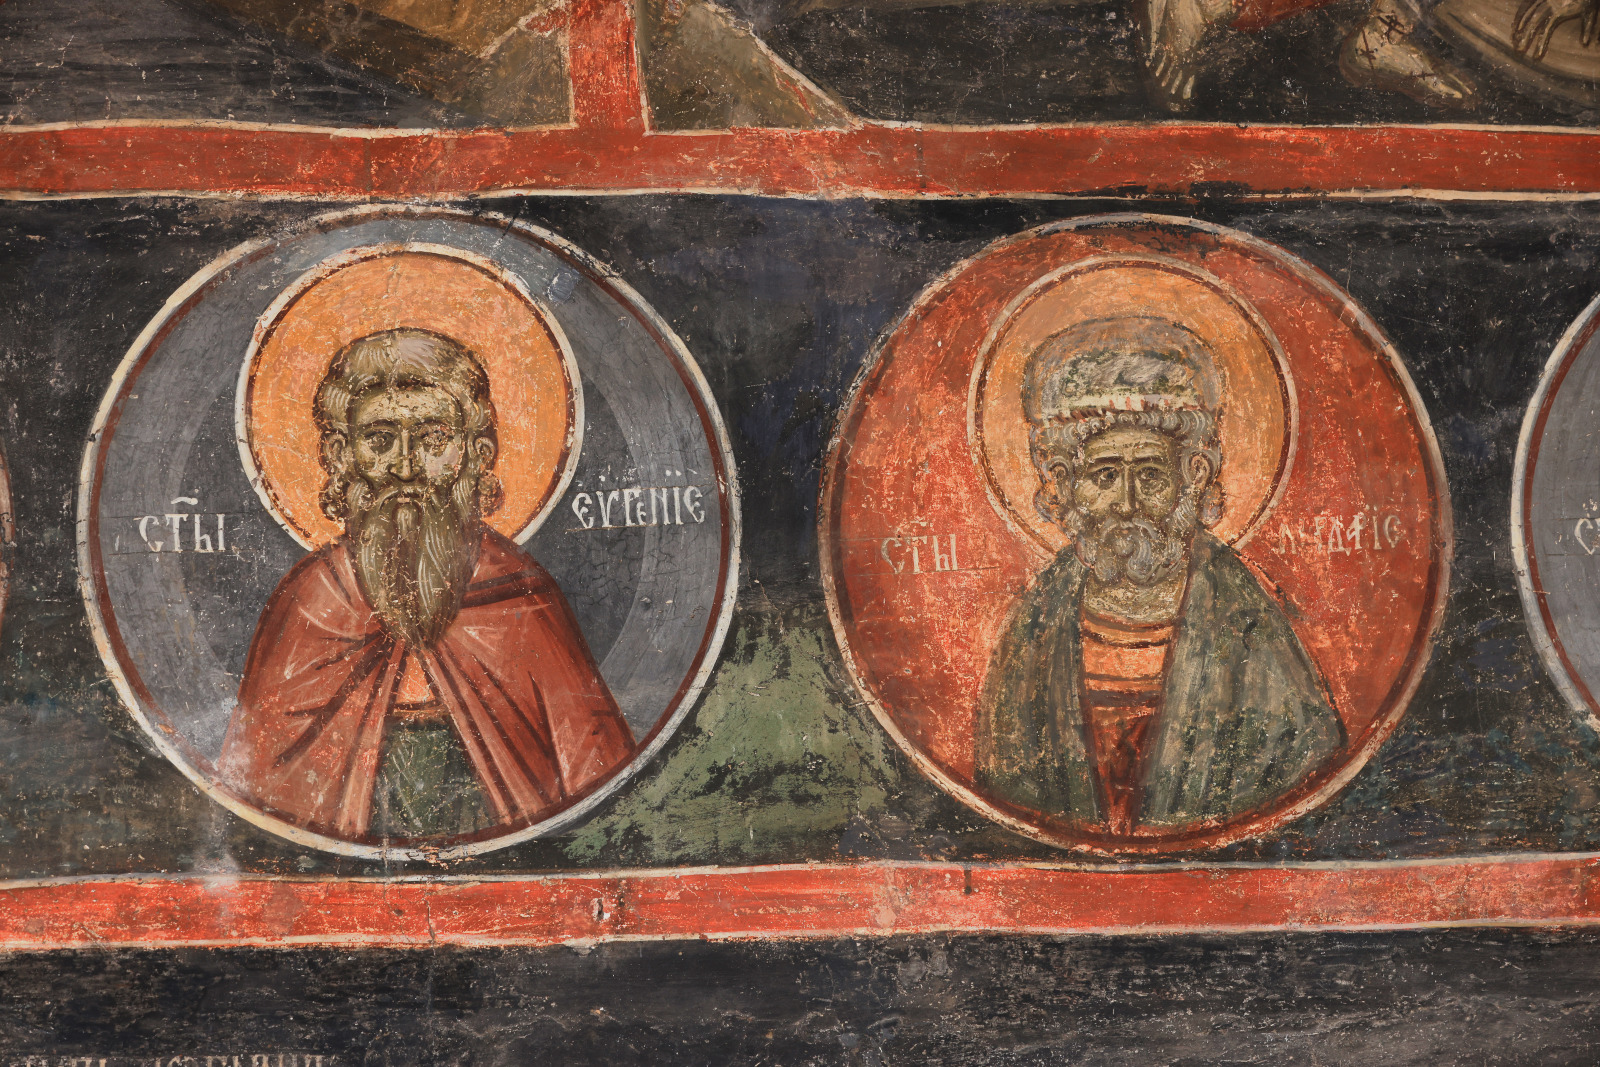 St. Eugenius and Mardarius